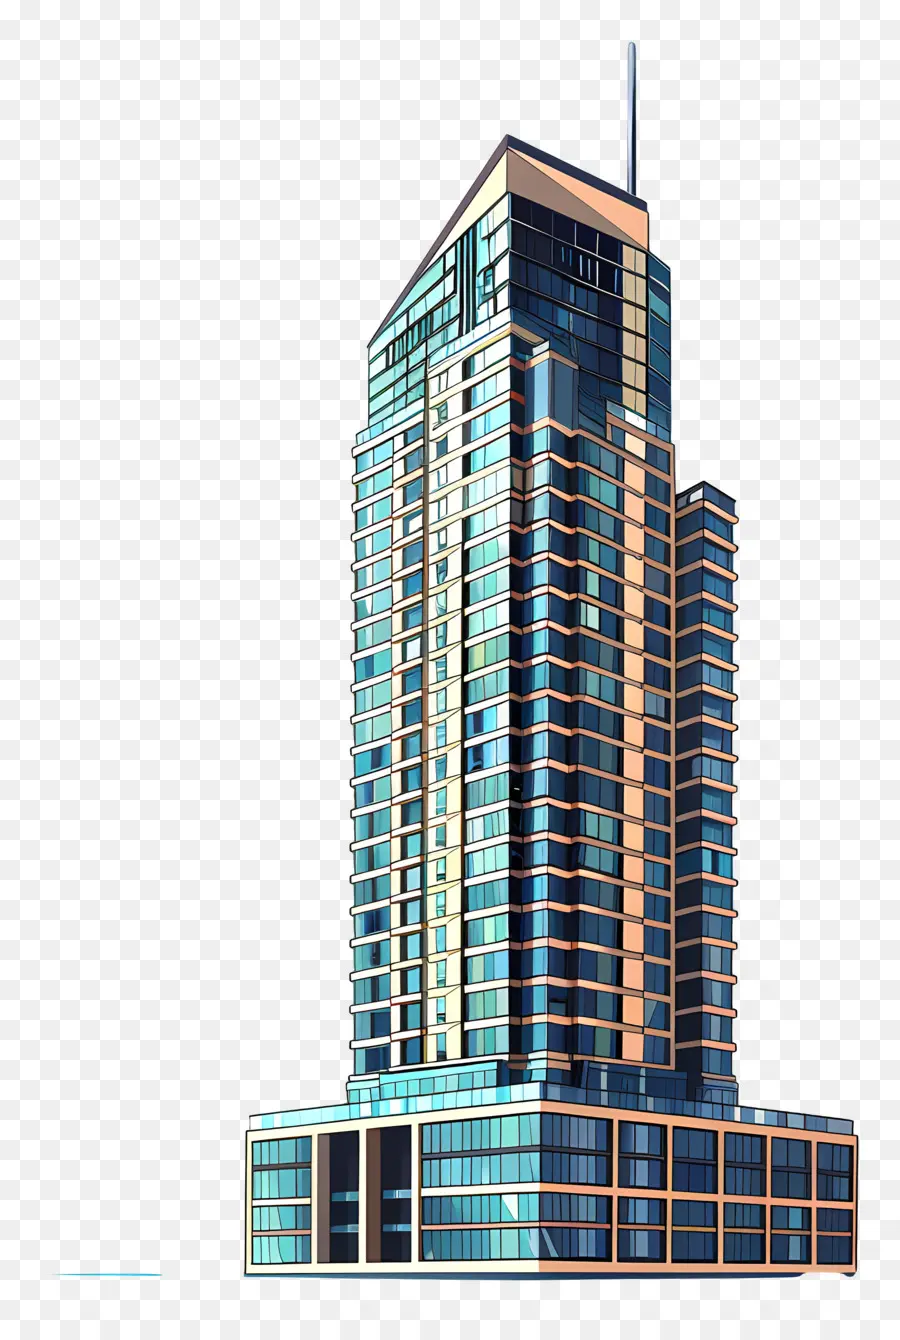 skyscraper modern architecture glass facade steel and concrete blue color scheme